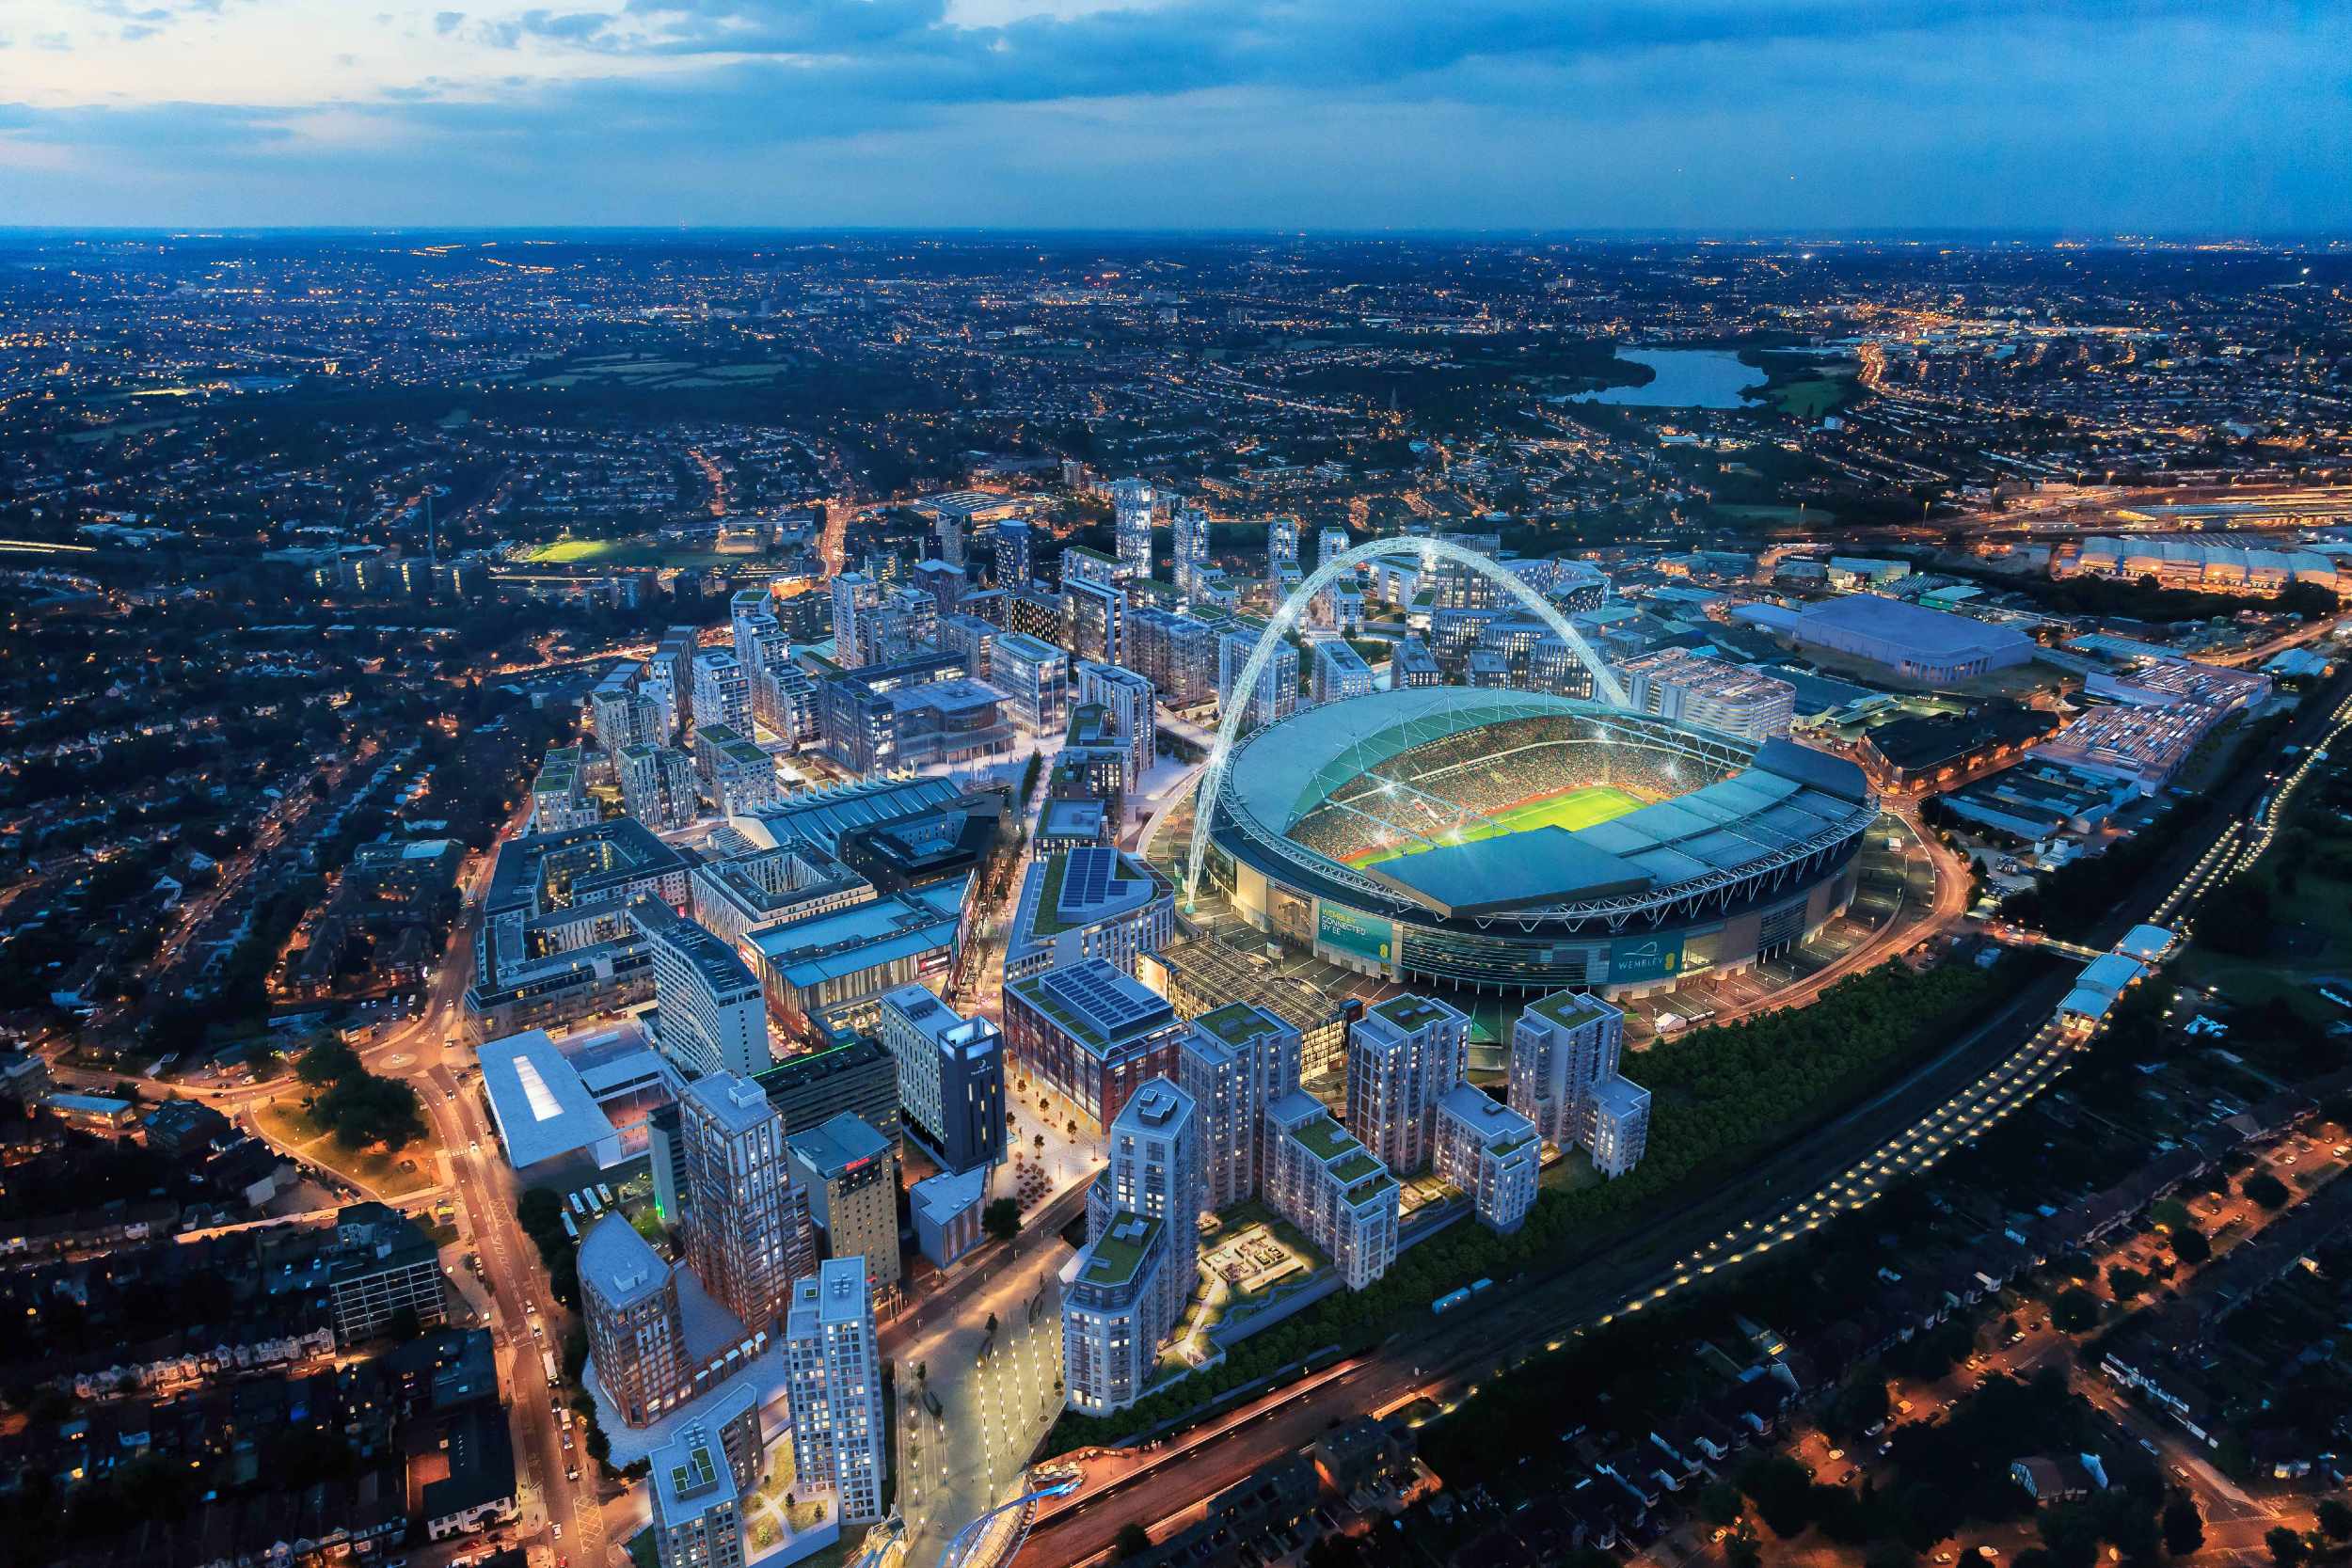 Wembley Park Masterplan